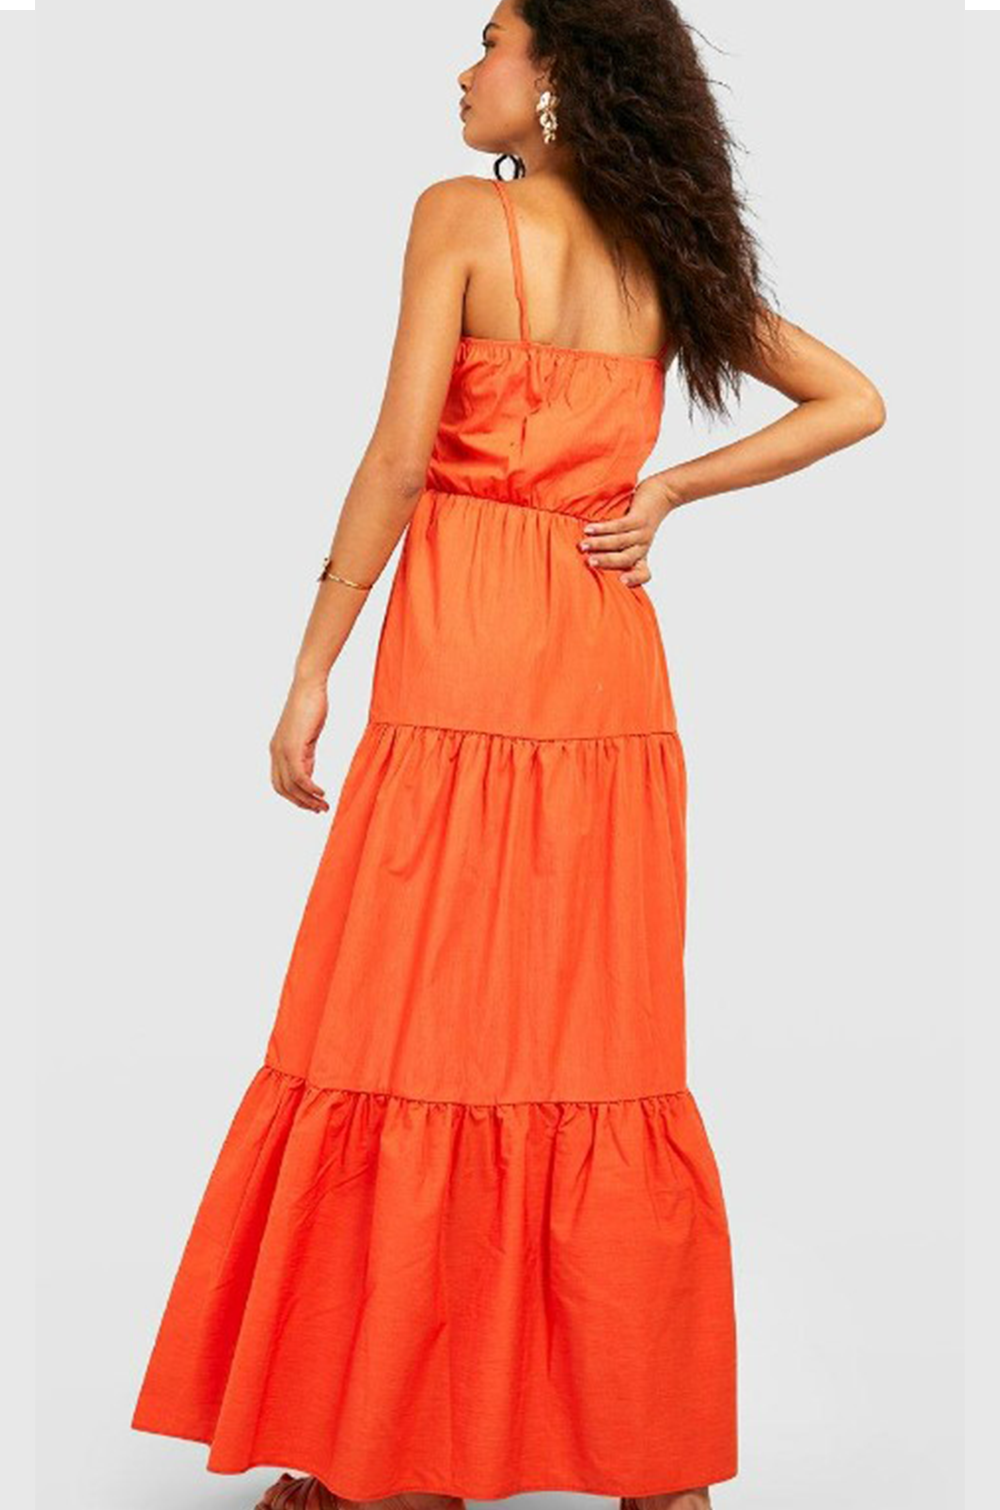 Rollick Orange Dress